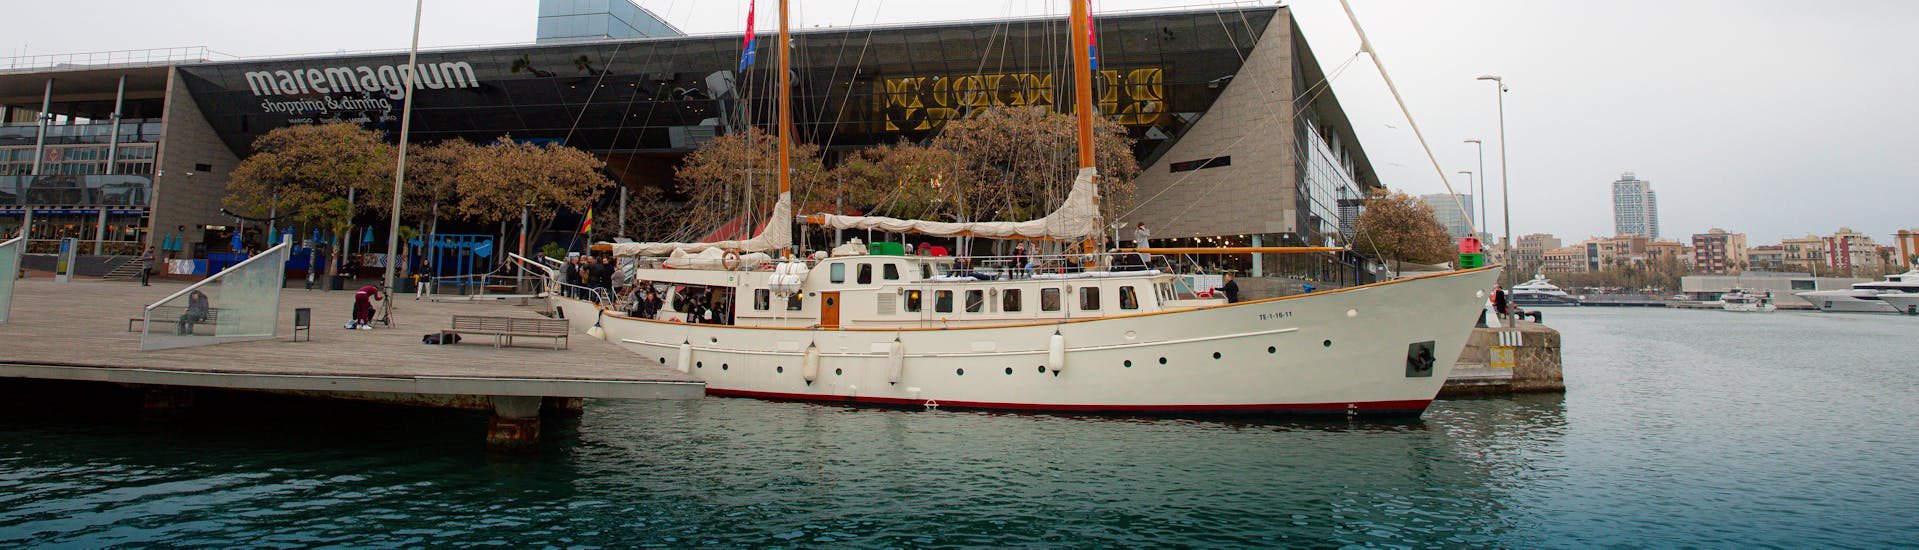 Historische boot uit de jaren 60 die een boottocht begint voor een activiteit met Historical Sailboat Gotland Charter.